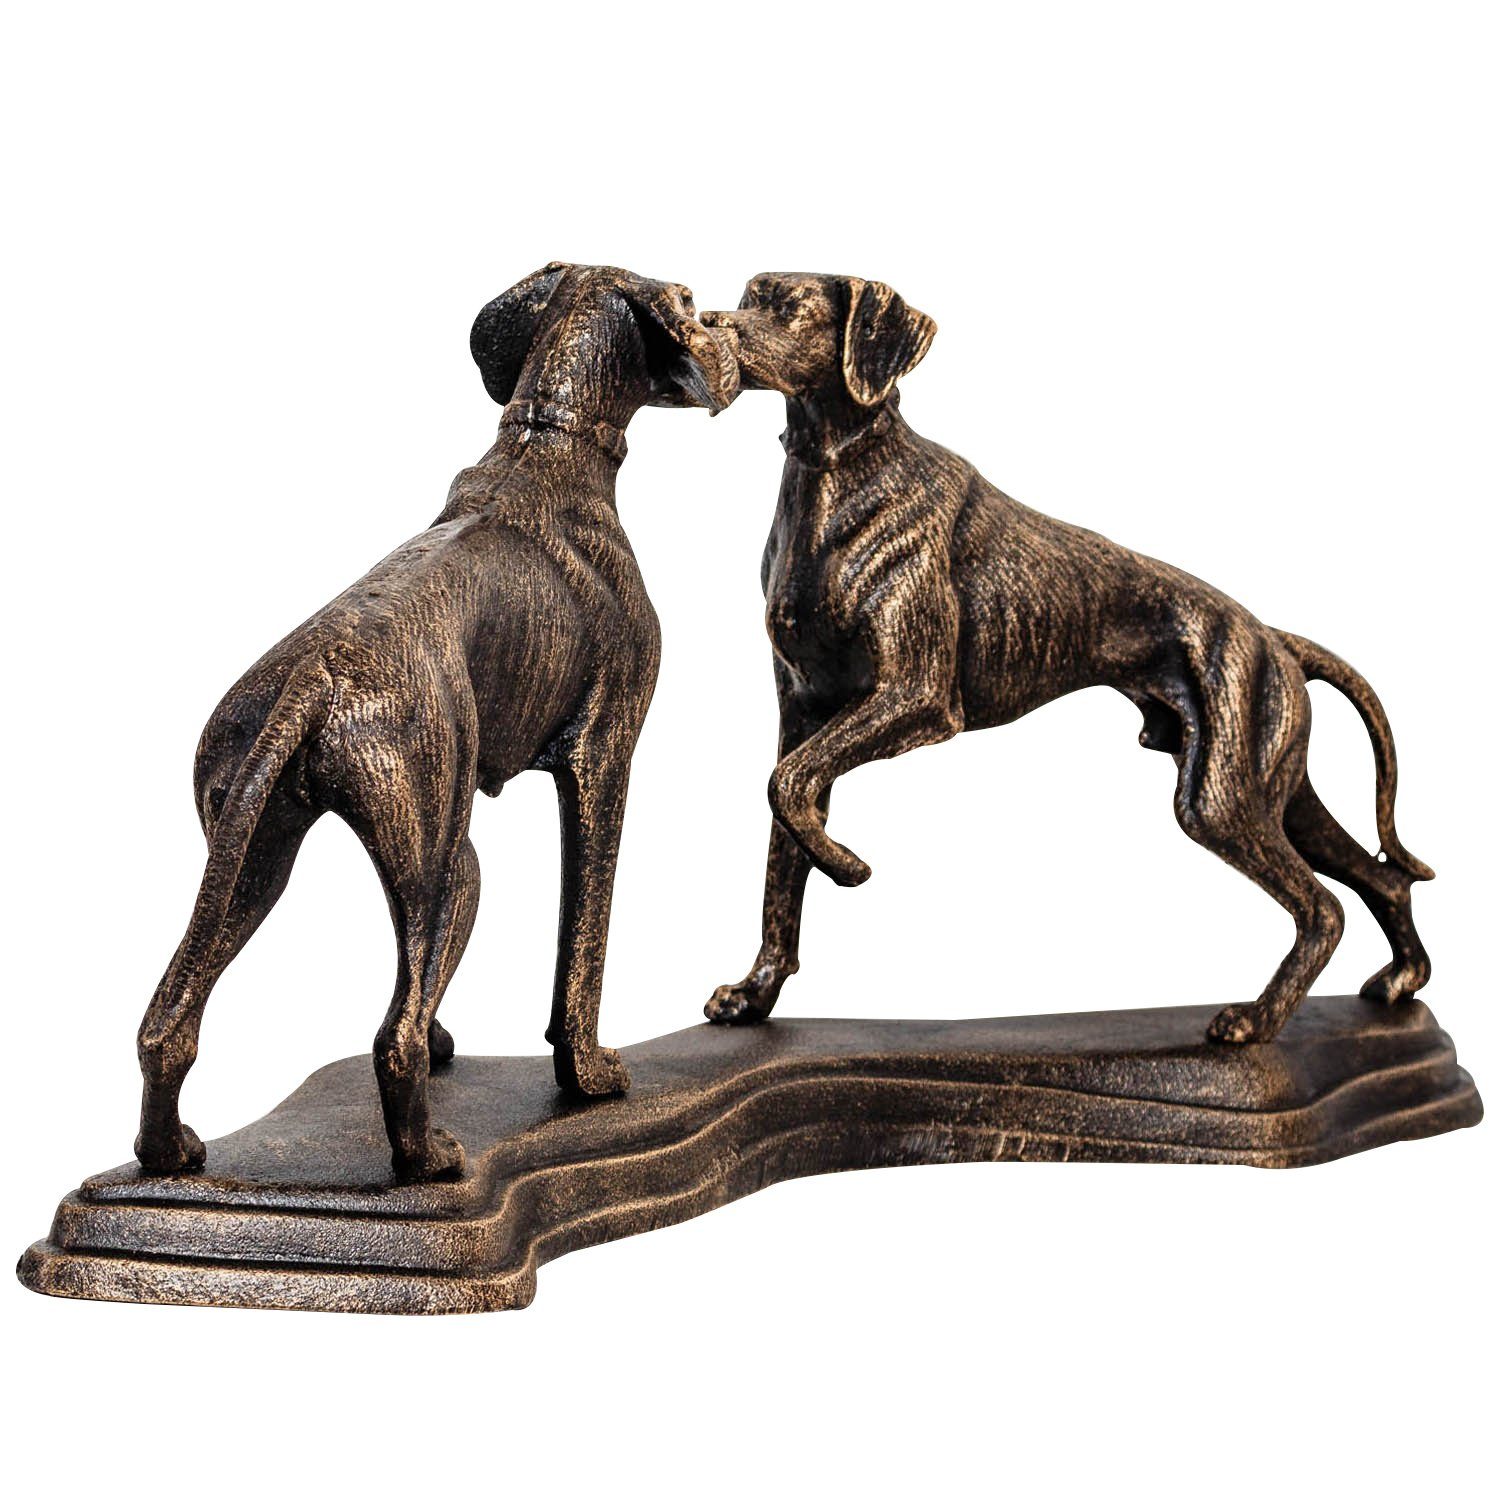 Aubaho Dekofigur 49cm Eisenfigur - Figur Antik-Stil Eisen Jagdhund Hund Skulptur